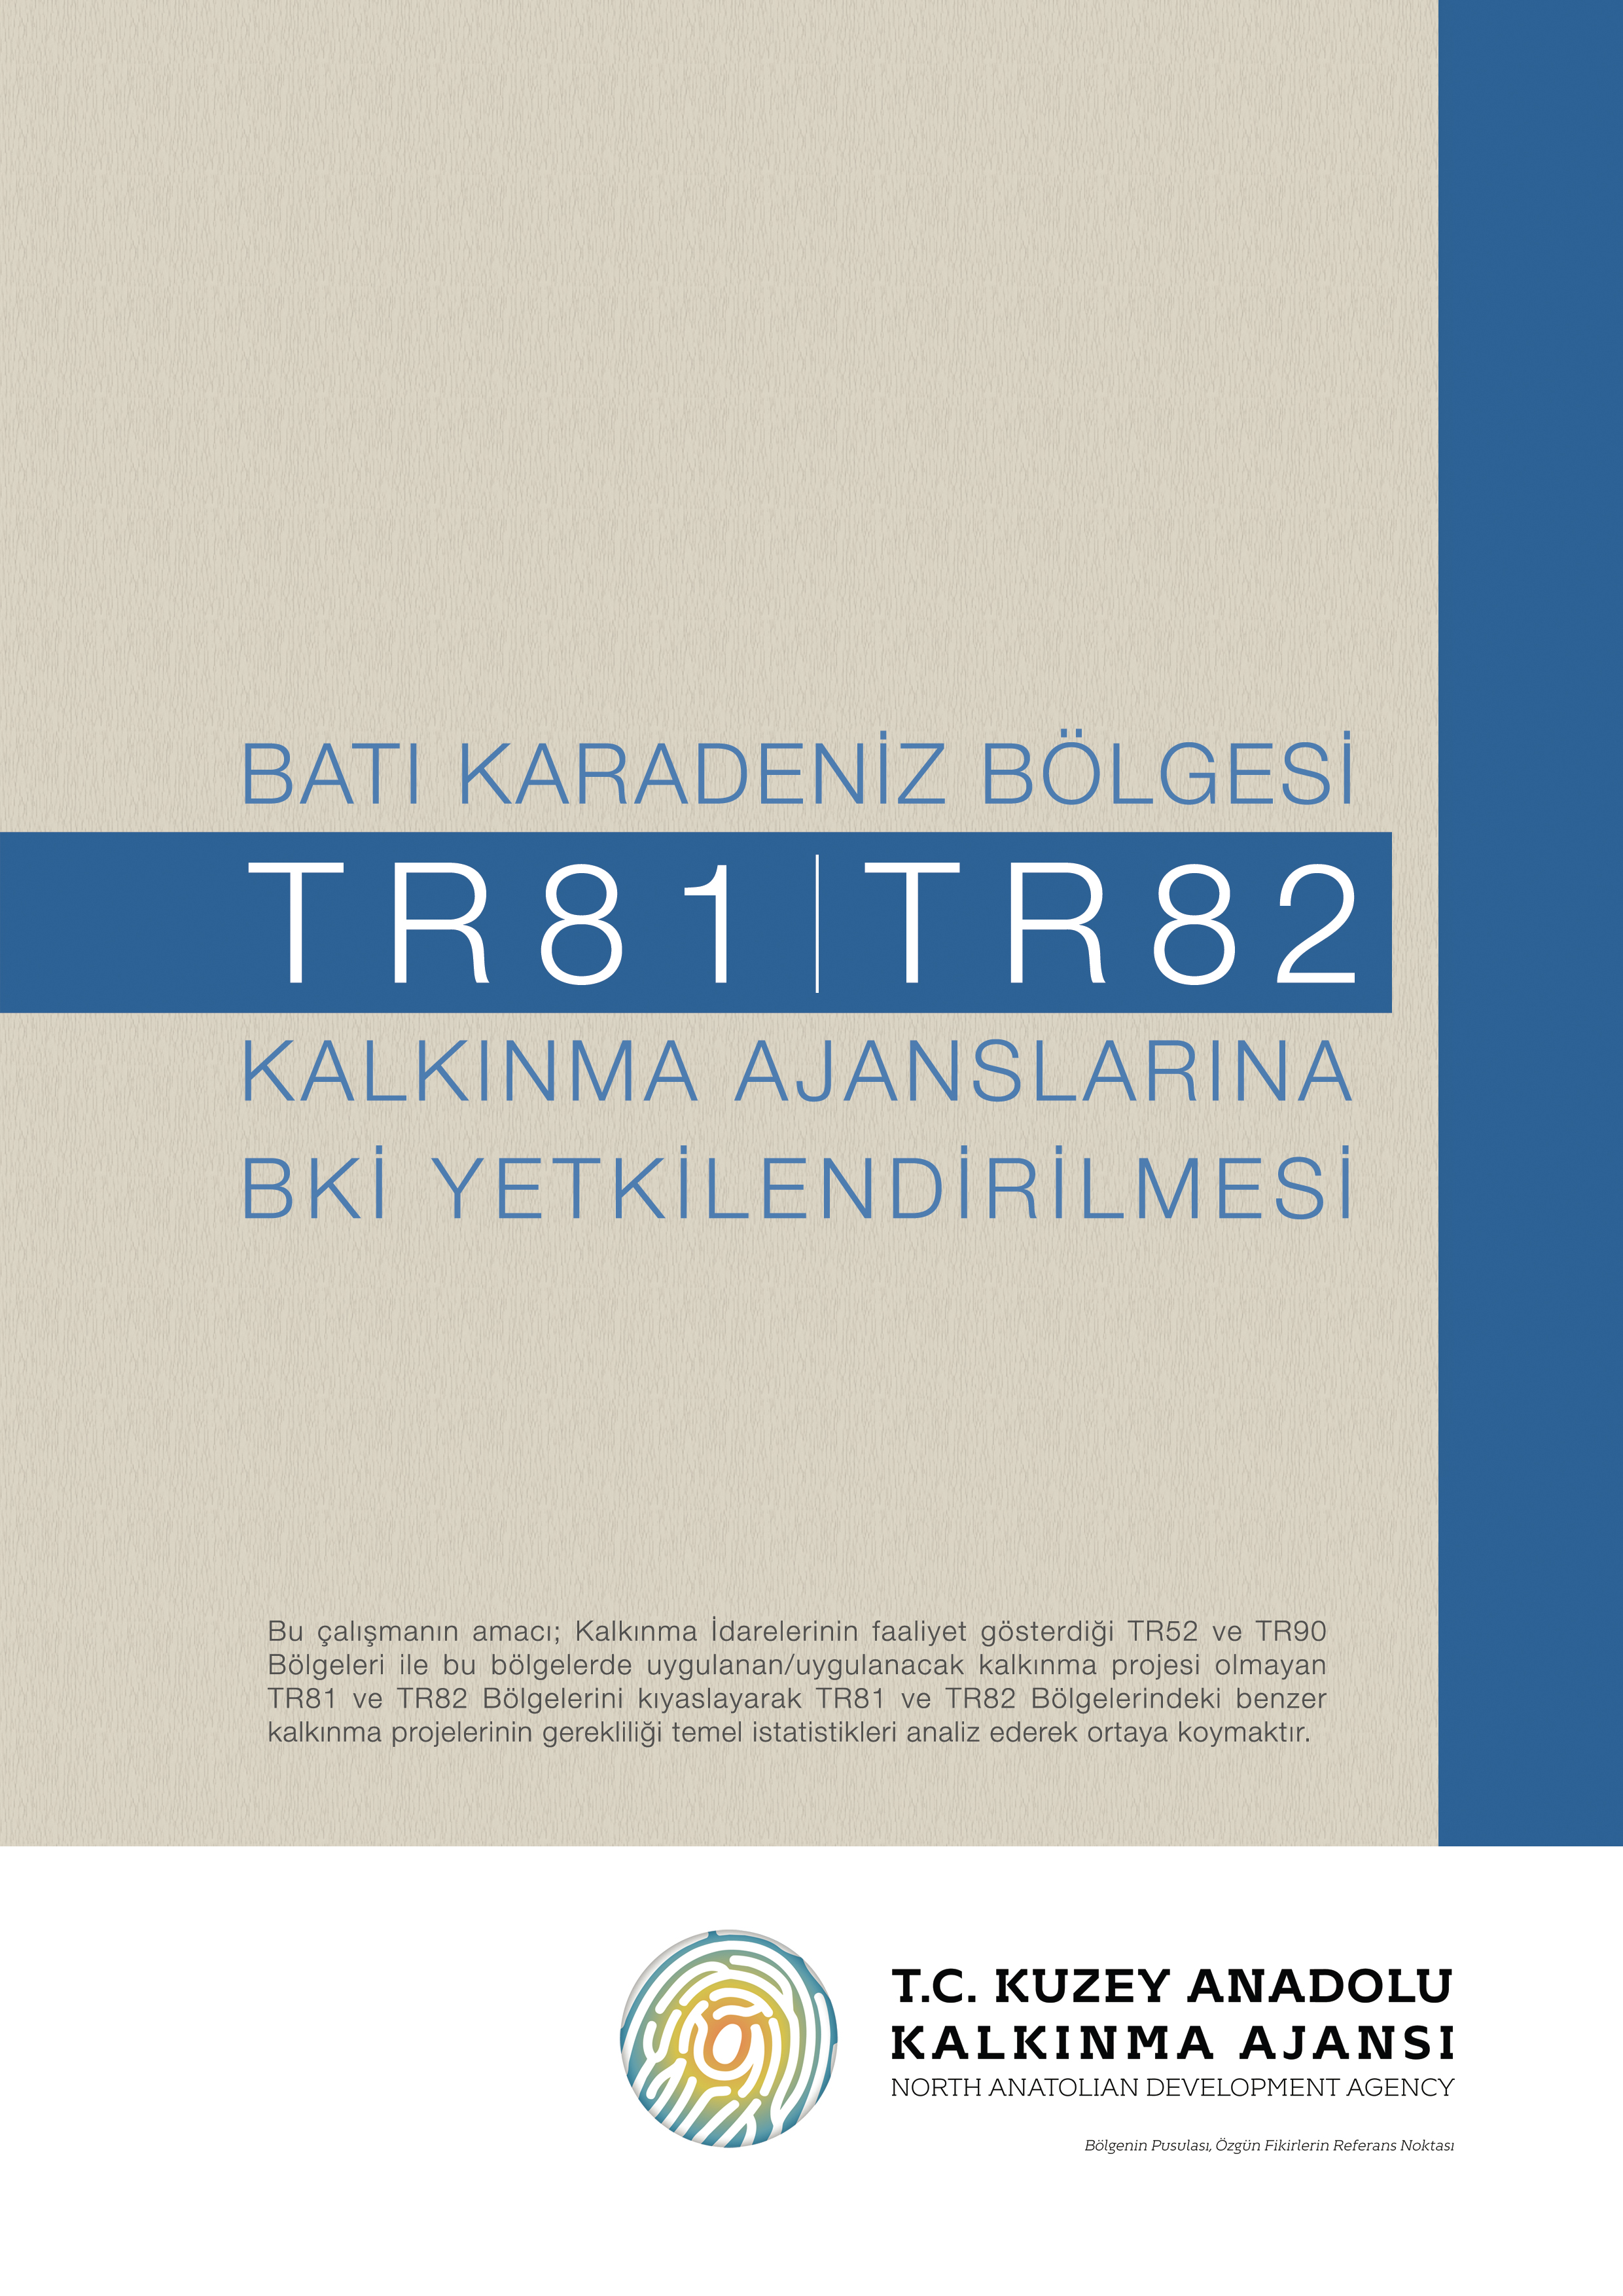 Bat Karadeniz Blgesi (TR81, TR82) Kalknma Ajanslarna BK Yetkilendirmesi